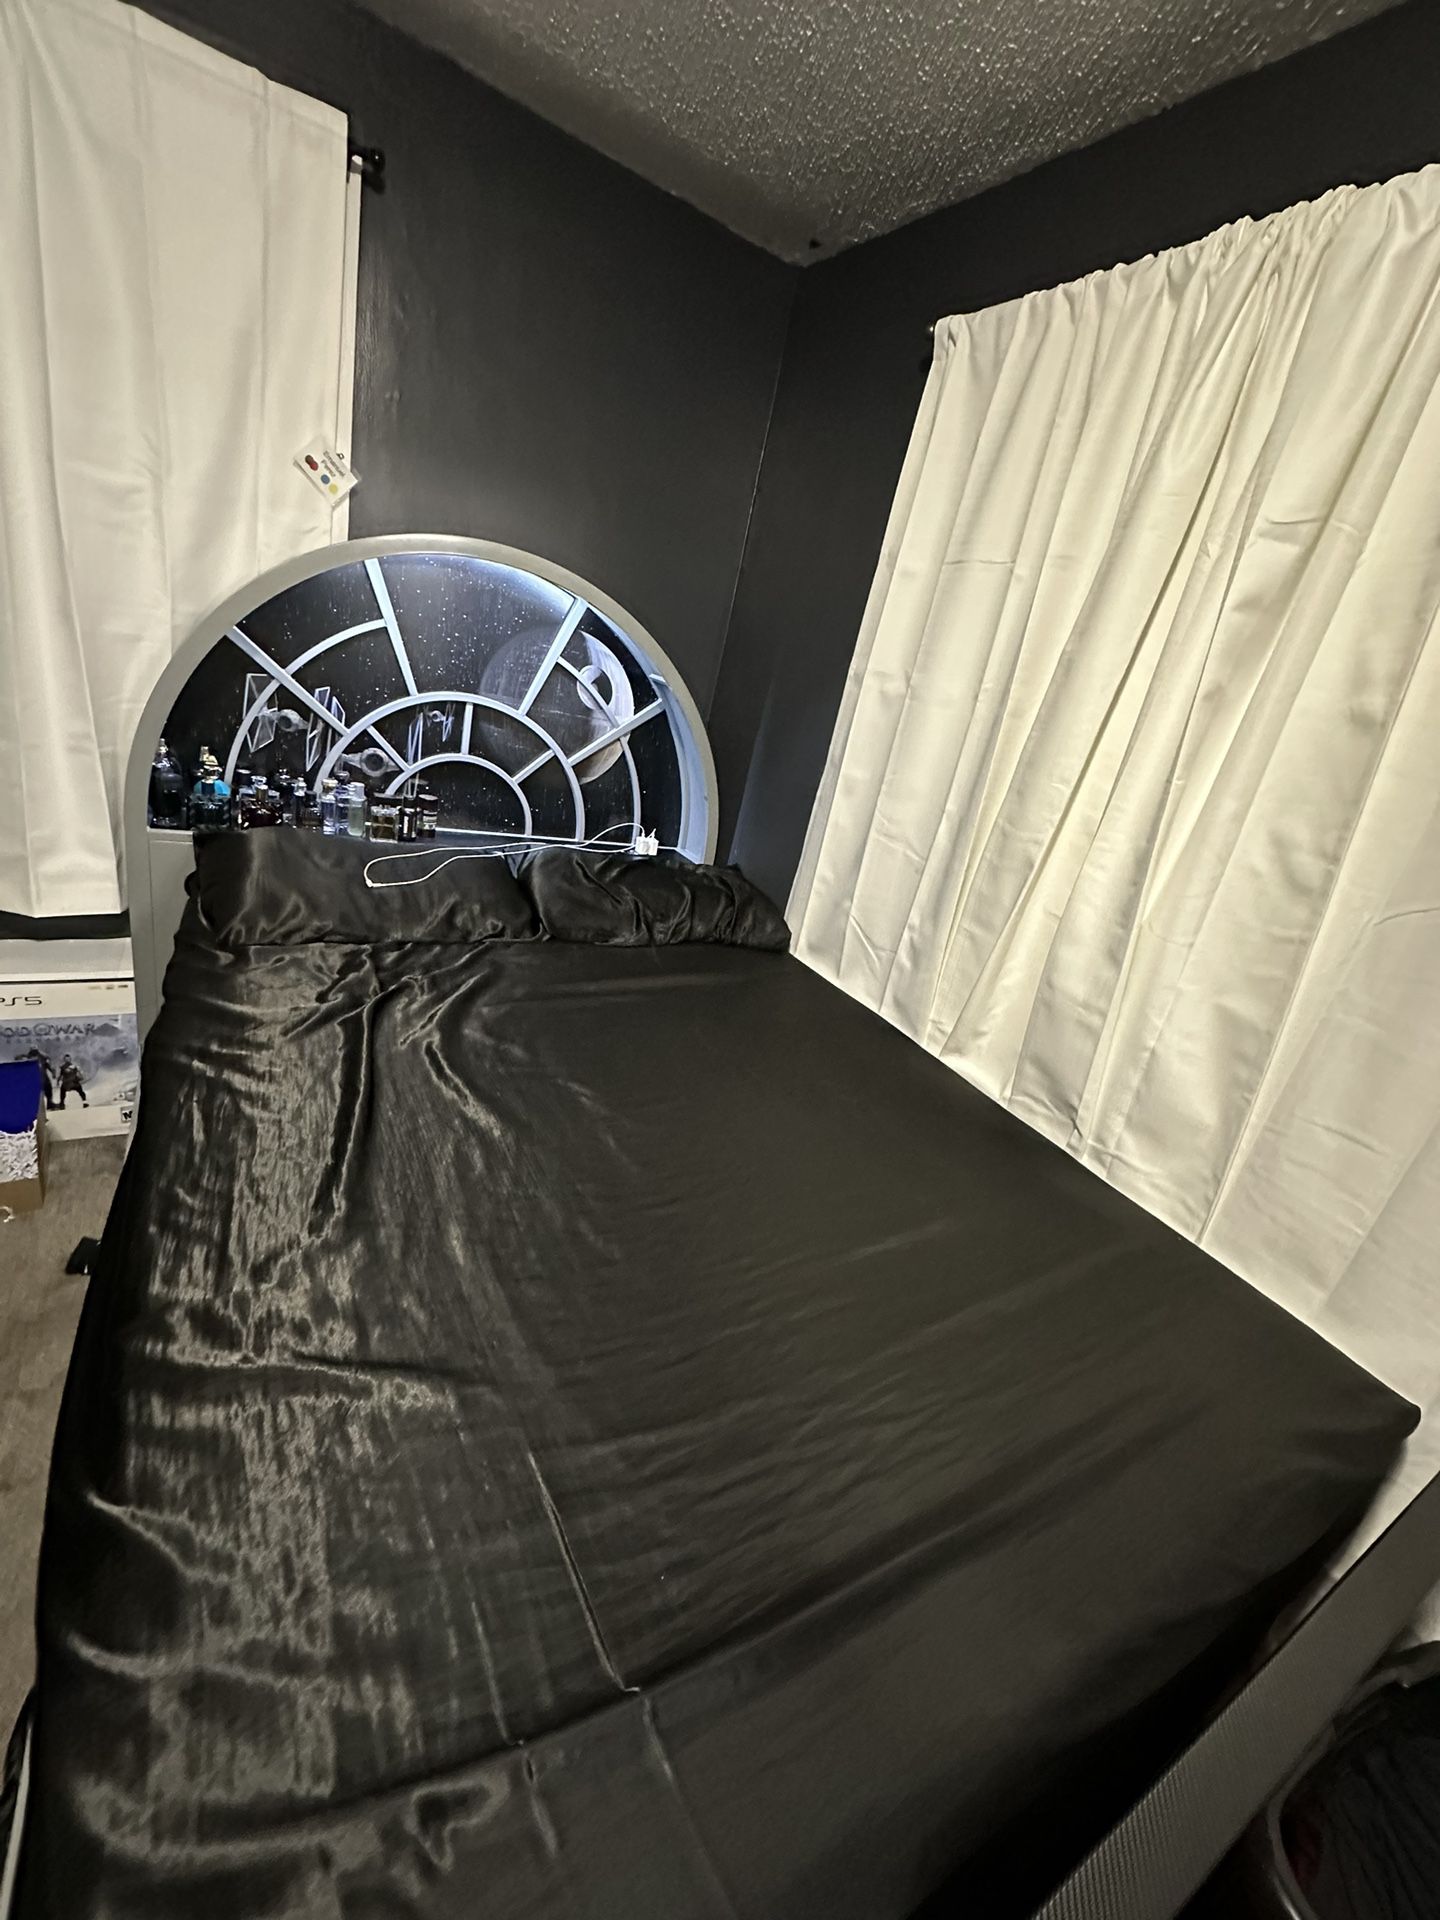 Star Wars Bed Frame 